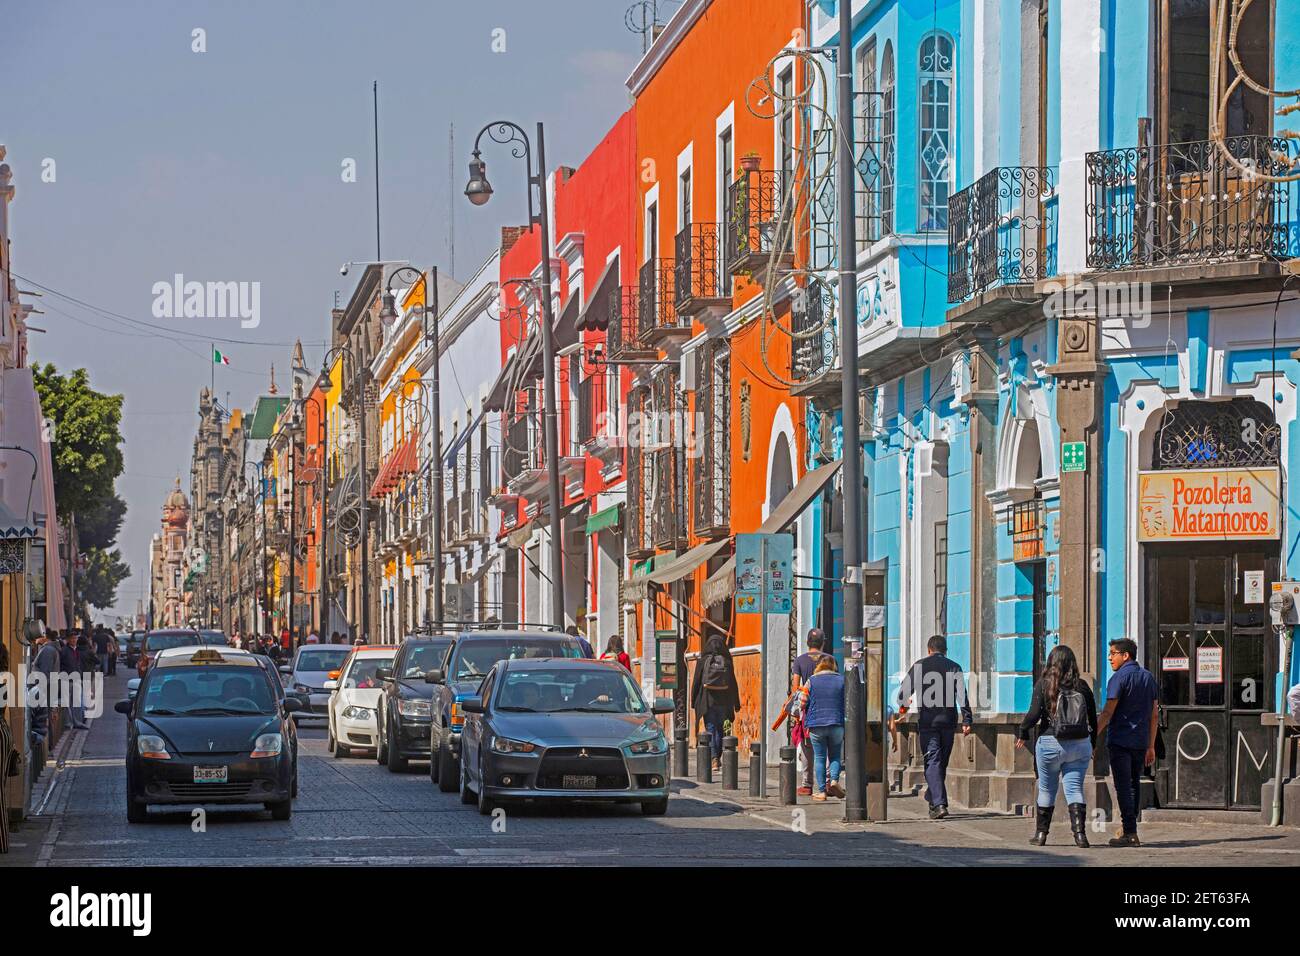 Rue colorée avec bâtiments coloniaux dans la ville de Puebla, Mexique Banque D'Images